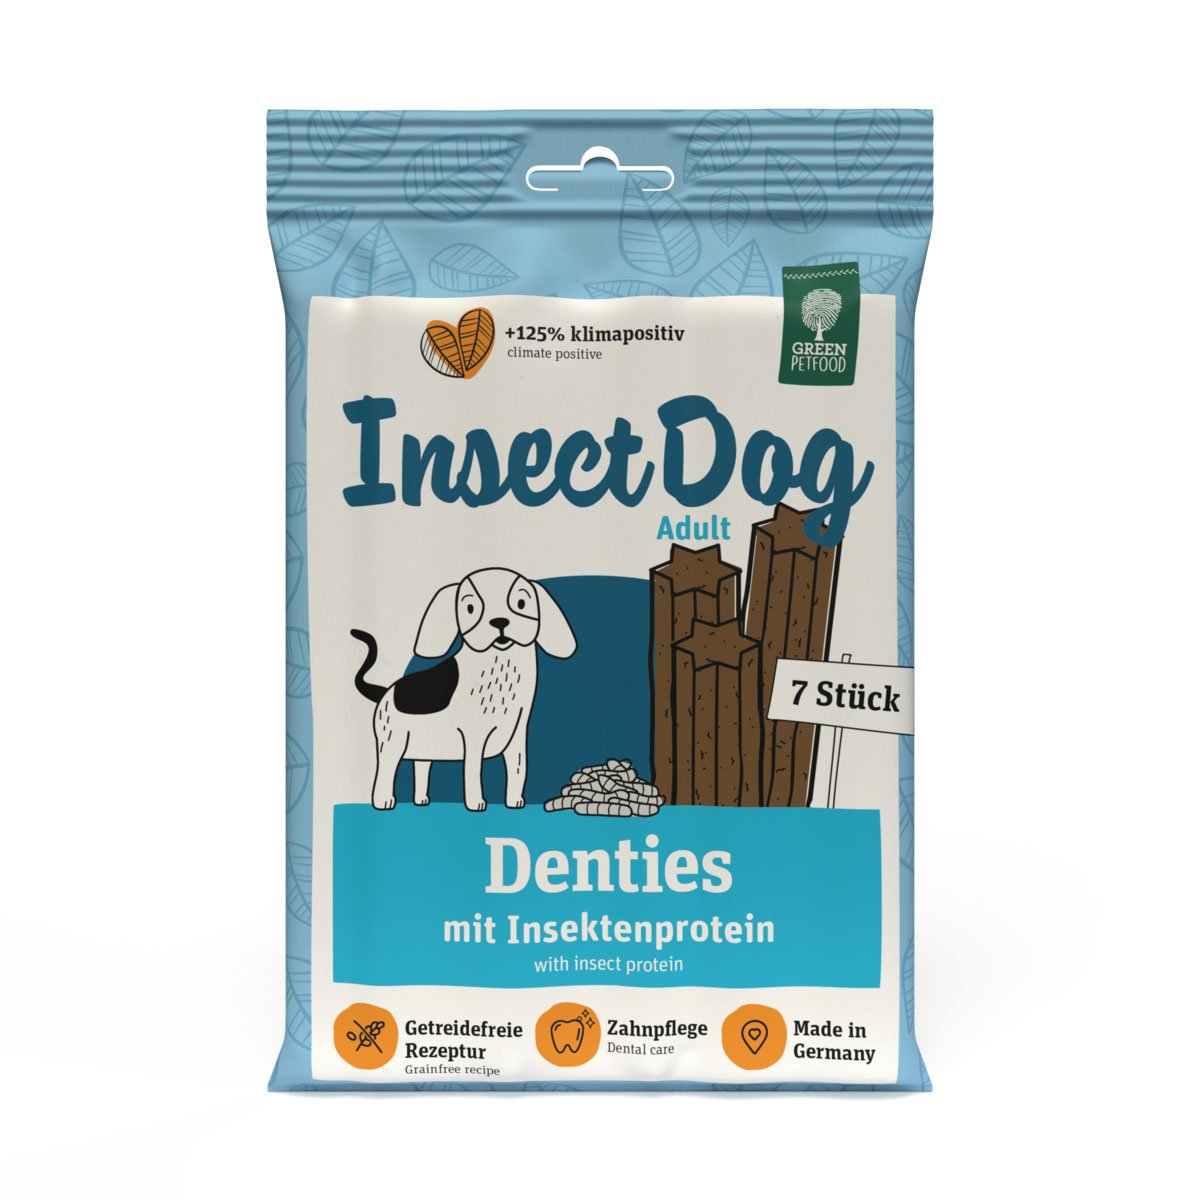 InsectDog Denties 4x180g von Green Petfood